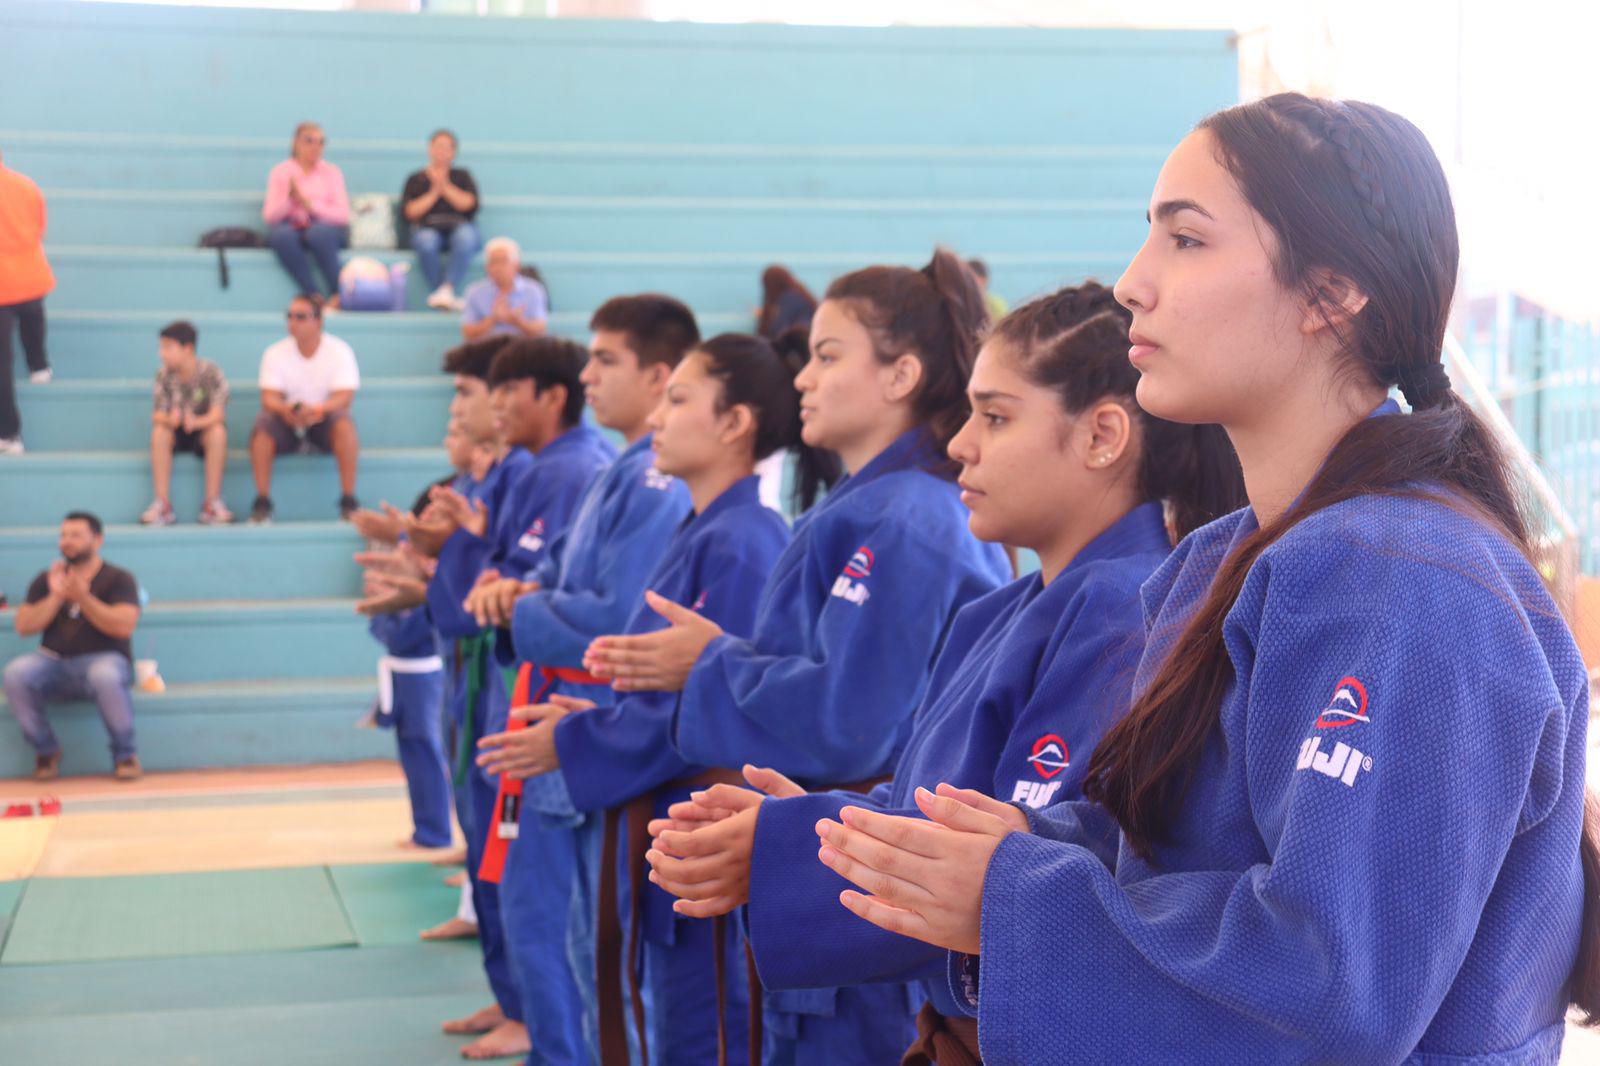 $!Reconocen legado del sensei José Medina Peraza, padre del judo en Mazatlán